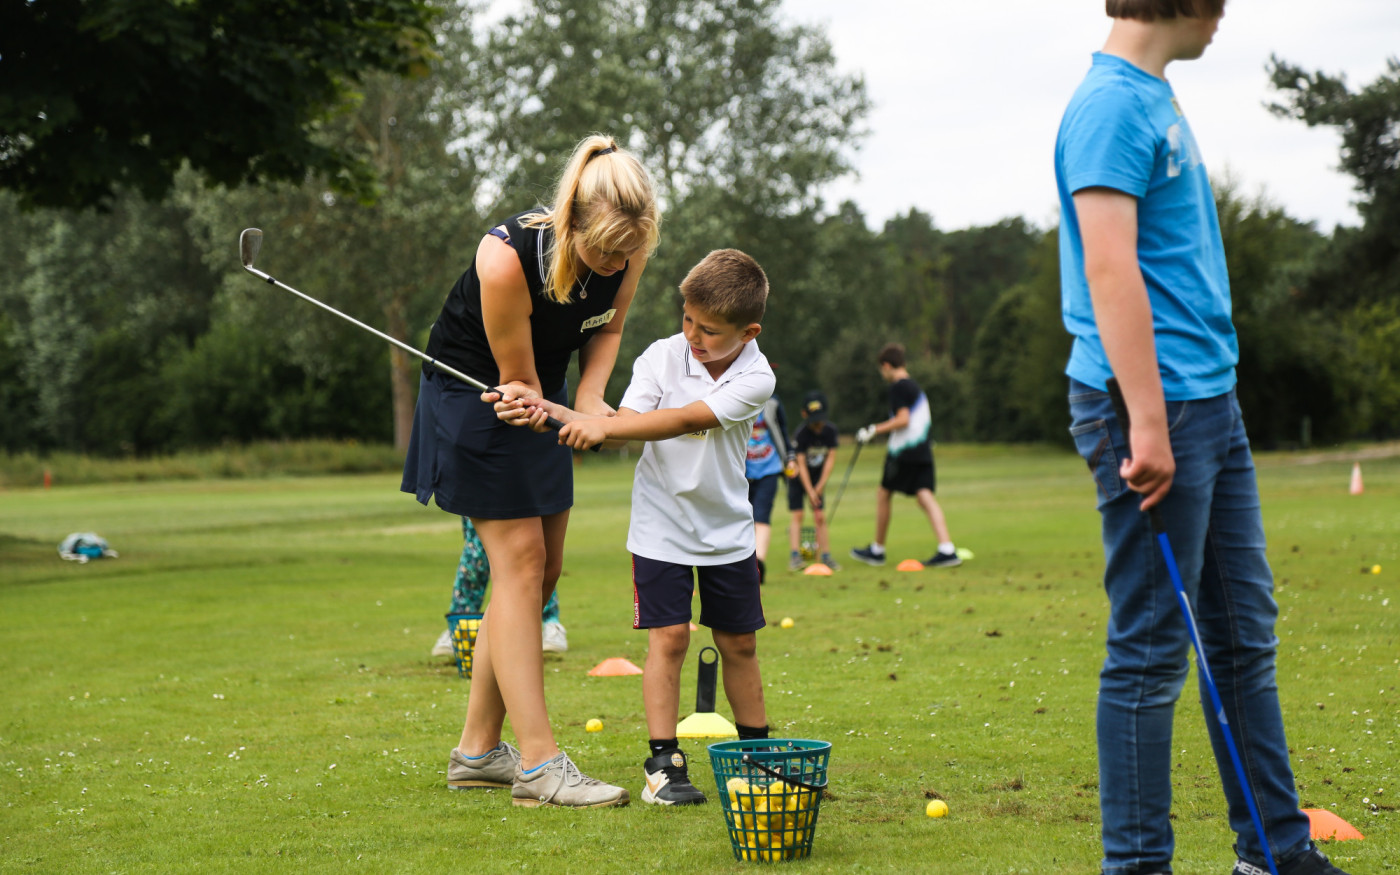 Strahlende Gesichter im Feriencamp des Gifhorner Golfclubs – Zweitägige Aktion fördert Inklusion von Kindern